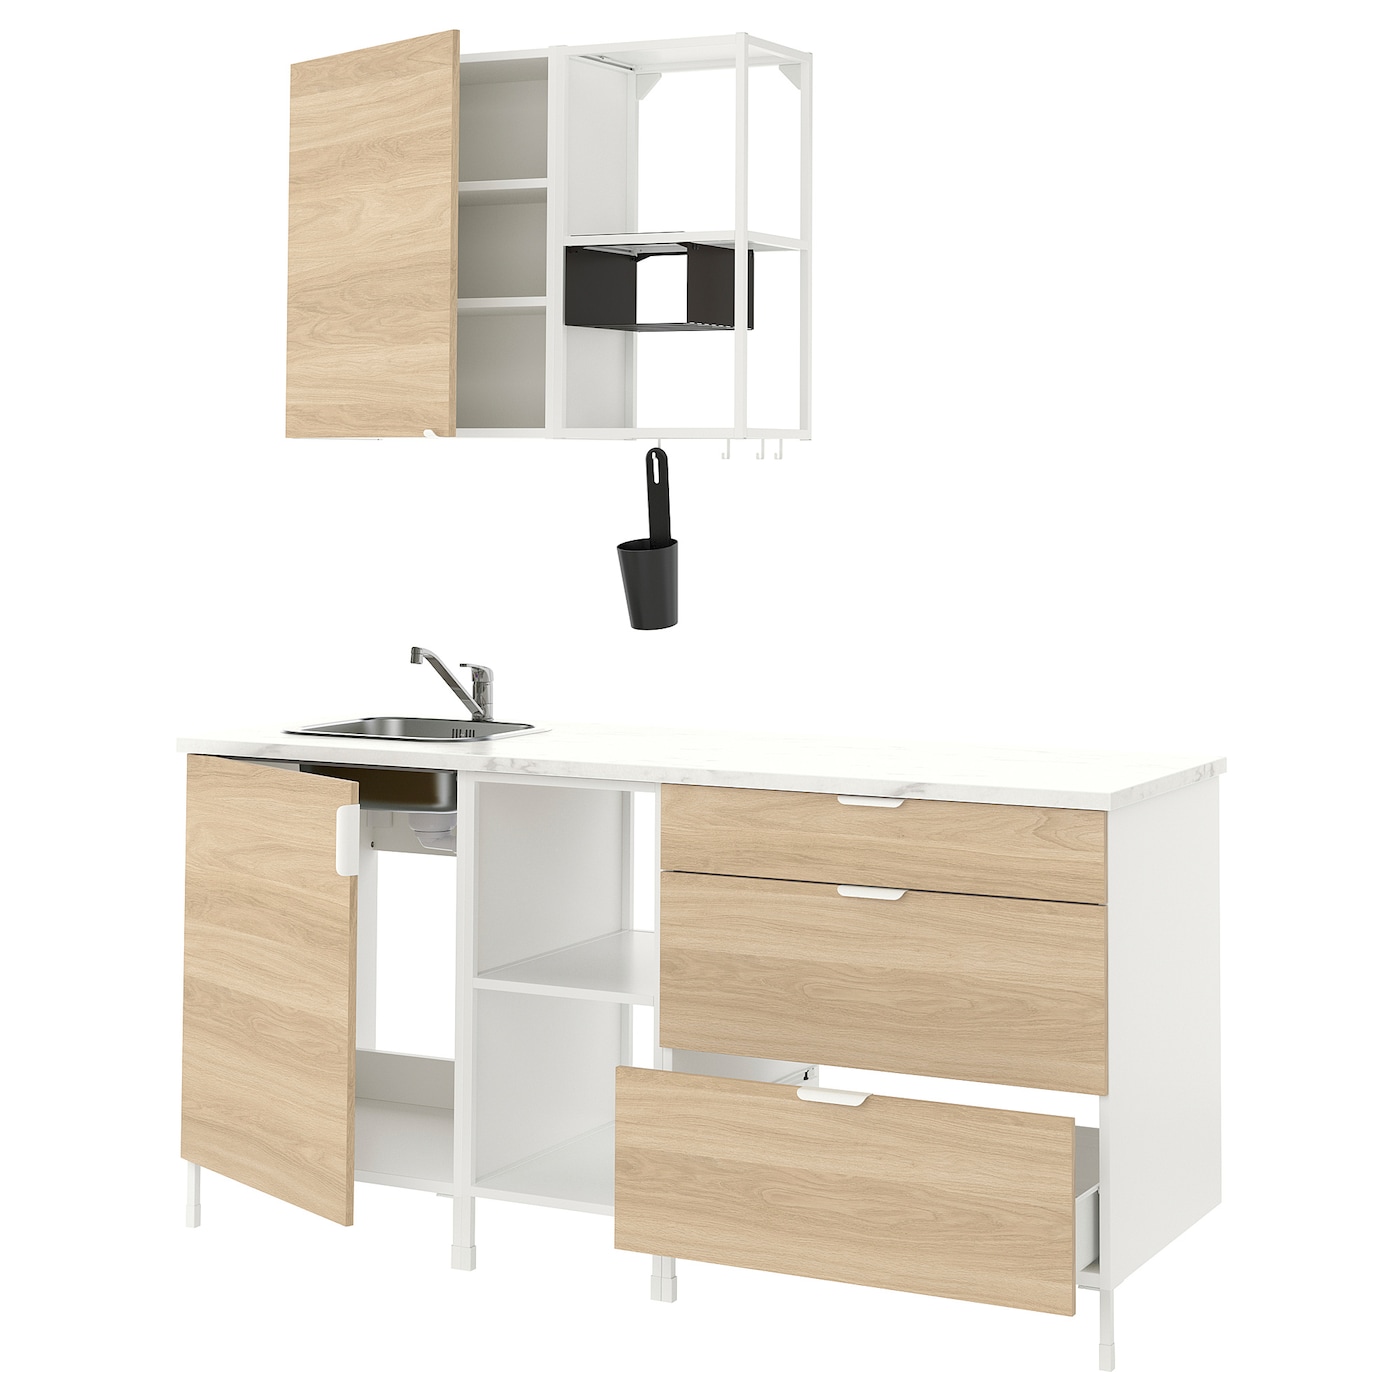 Кухонная комбинация для хранения вещей - ENHET  IKEA/ ЭНХЕТ ИКЕА, 183х63,5х222 см, белый/бежевый